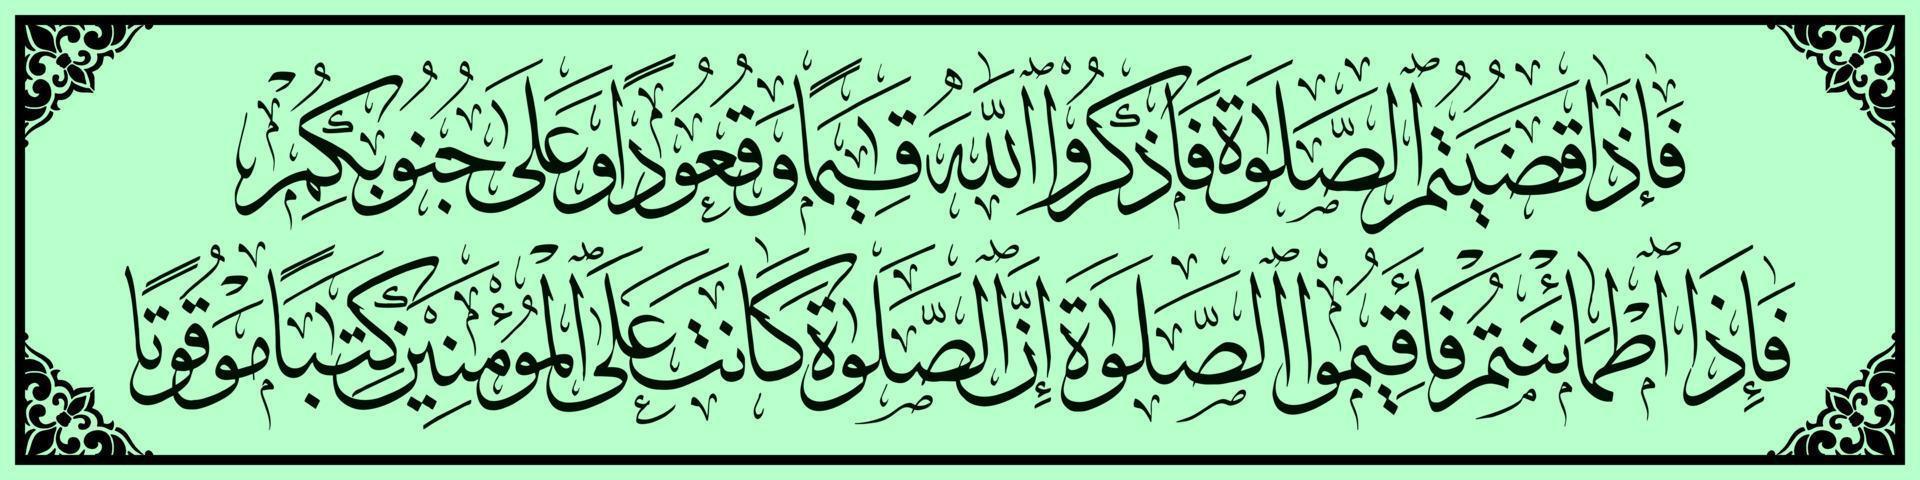 caligrafia árabe, al qur'an surah an nisa 103, traduzido a seguir, quando terminar sua oração, lembre-se de alá quando estiver de pé, quando se sentar e quando se deitar. então, quando você se sentir seguro, vetor